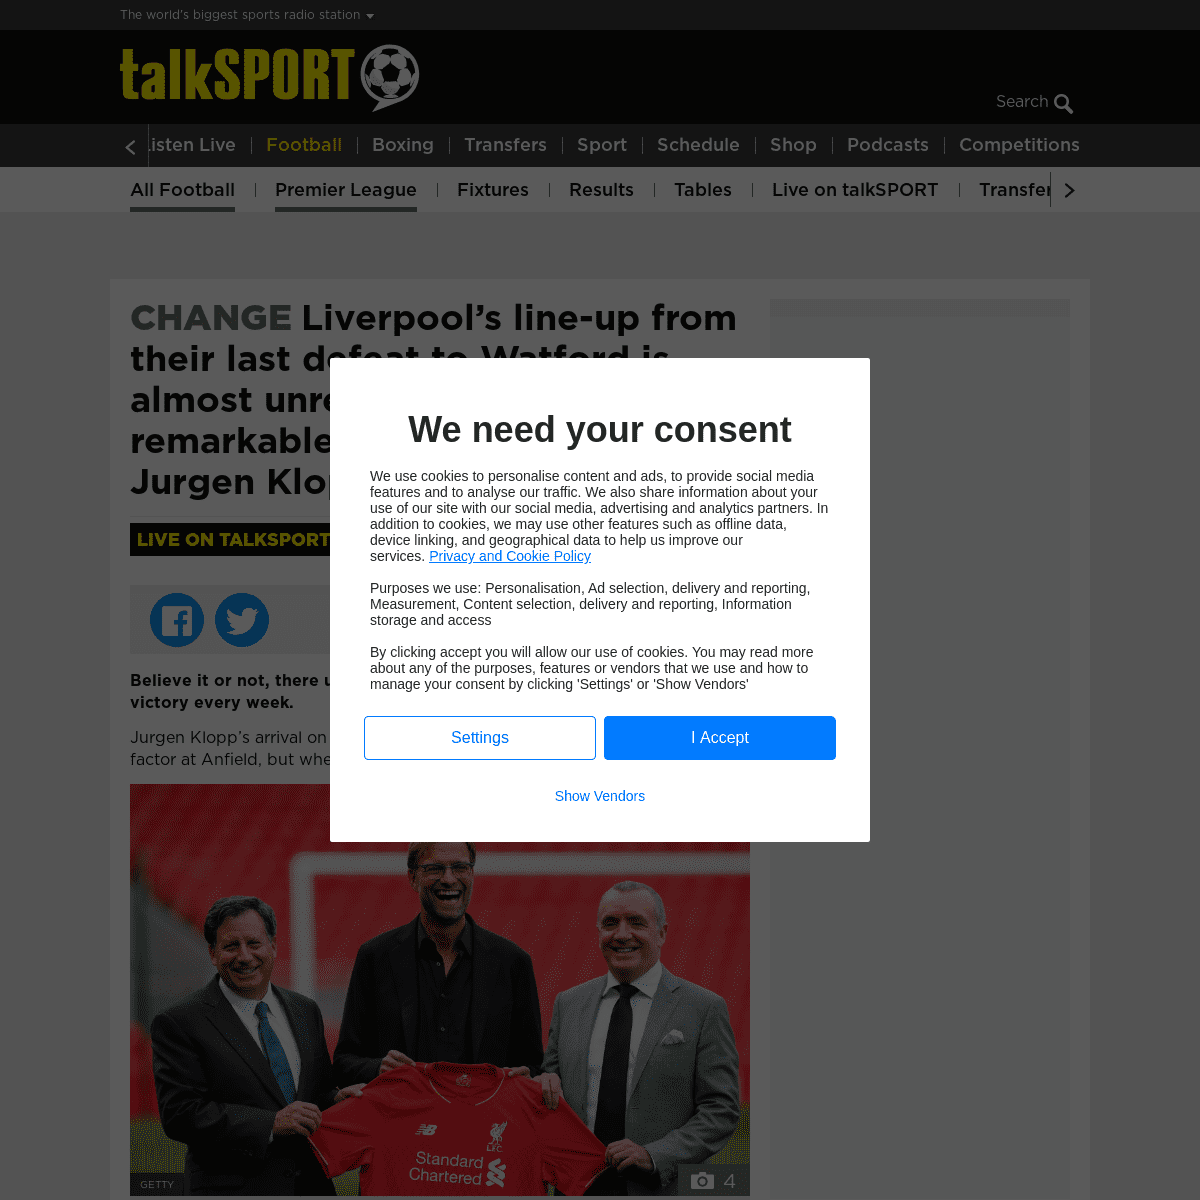 A complete backup of talksport.com/football/676095/liverpool-line-up-watford-transformation-jurgen-klopp/